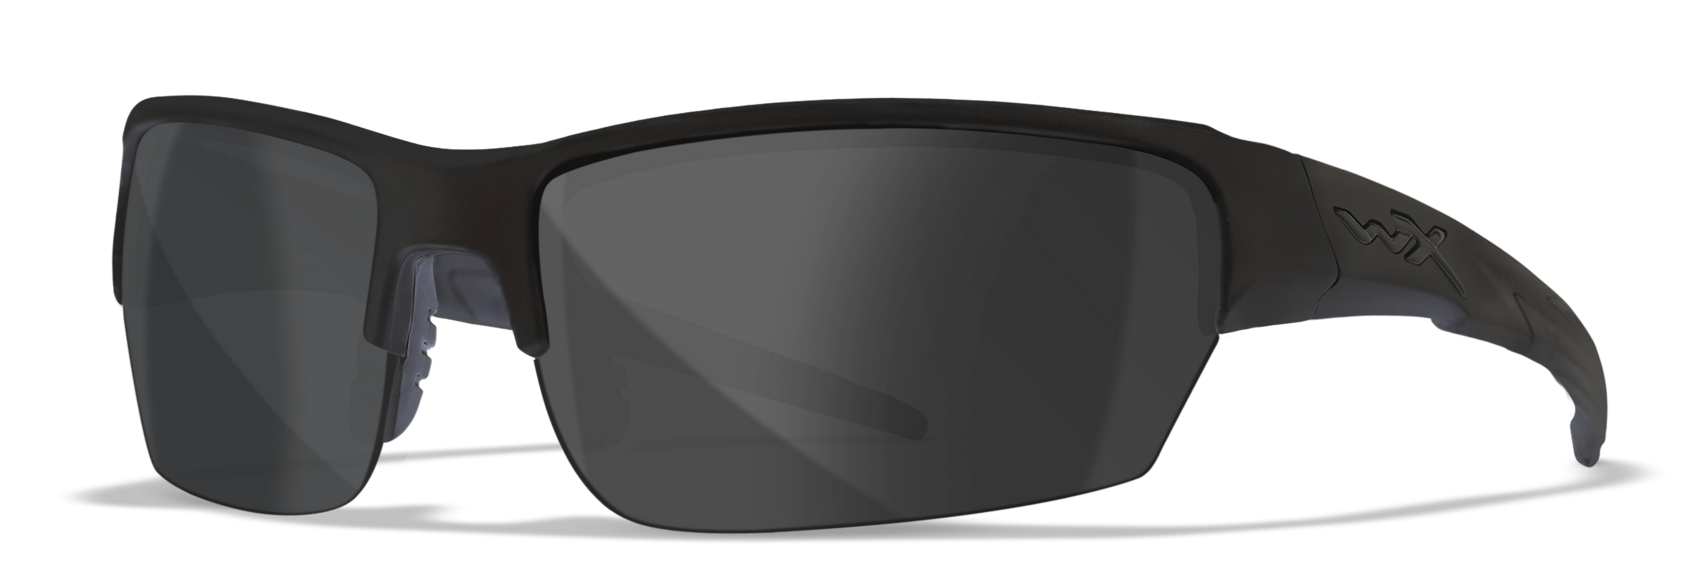 Wiley X WX Saint - Alternative Fit Matte Black Sunglasses